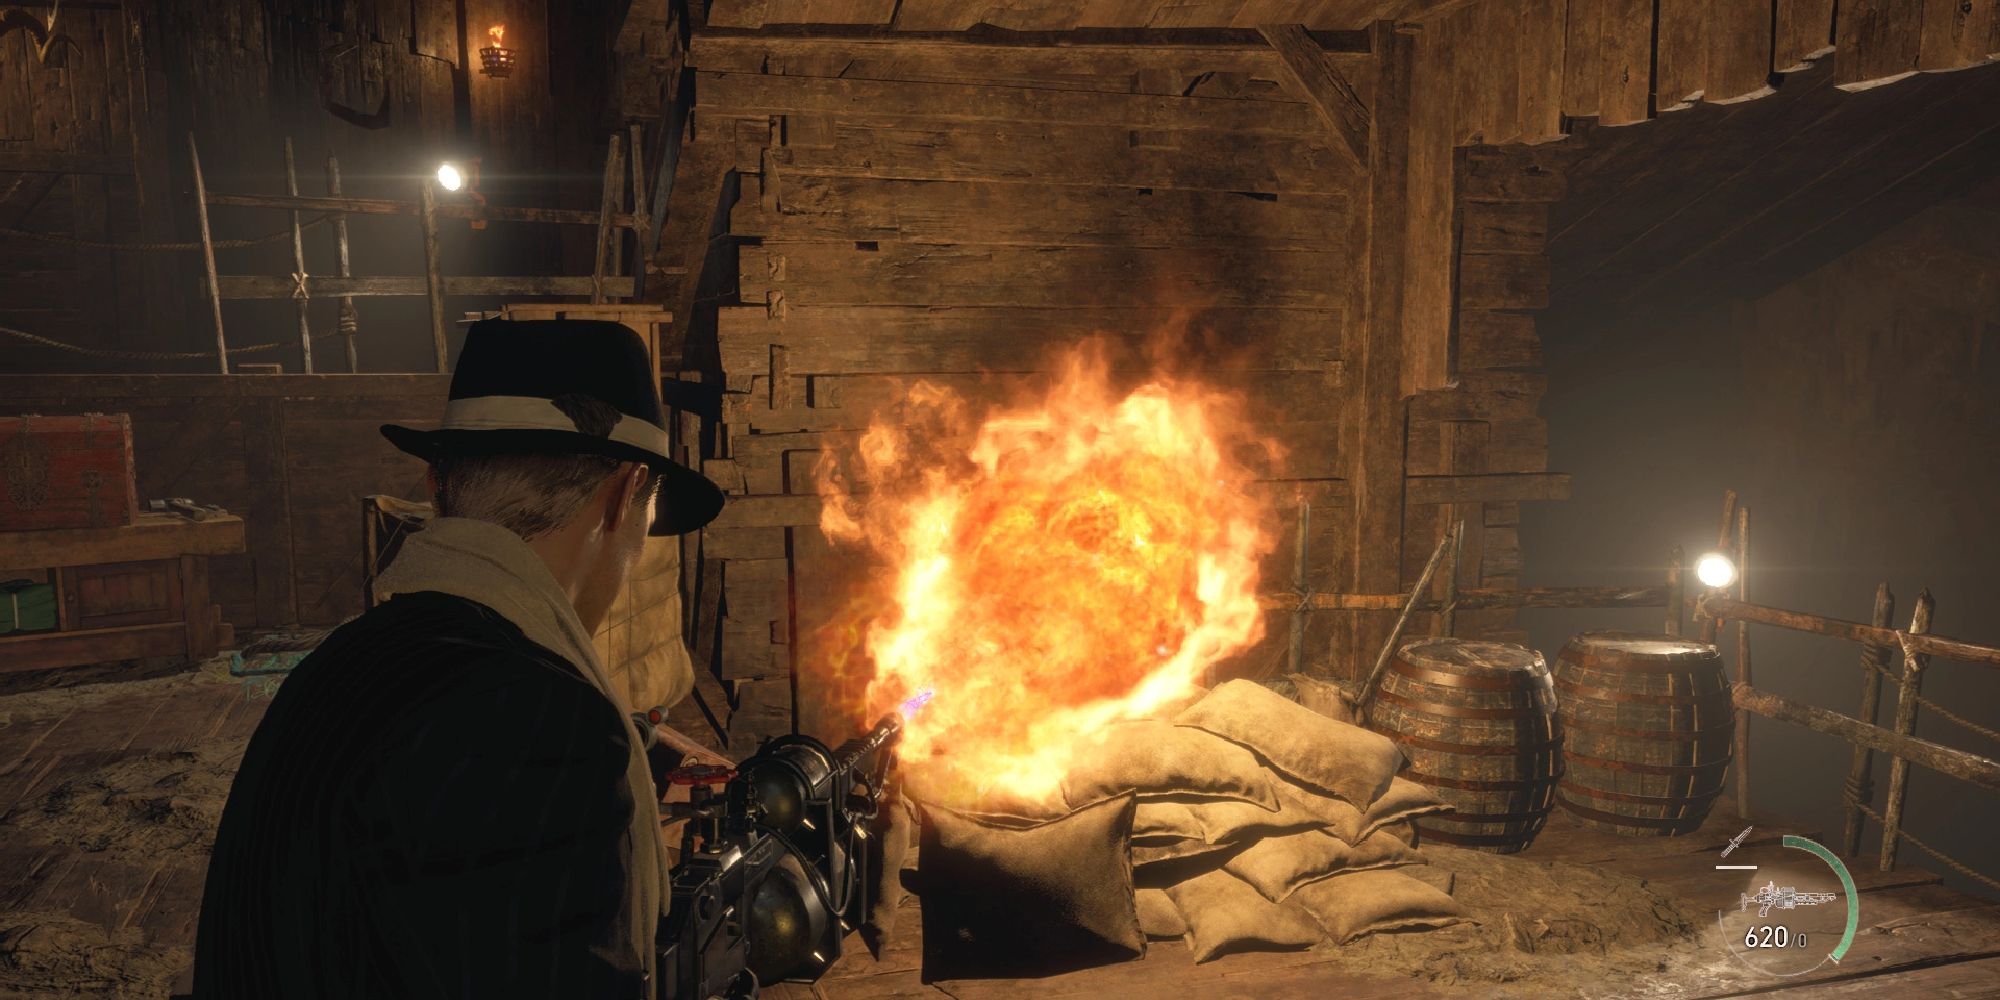 Leon firing a flamethrower